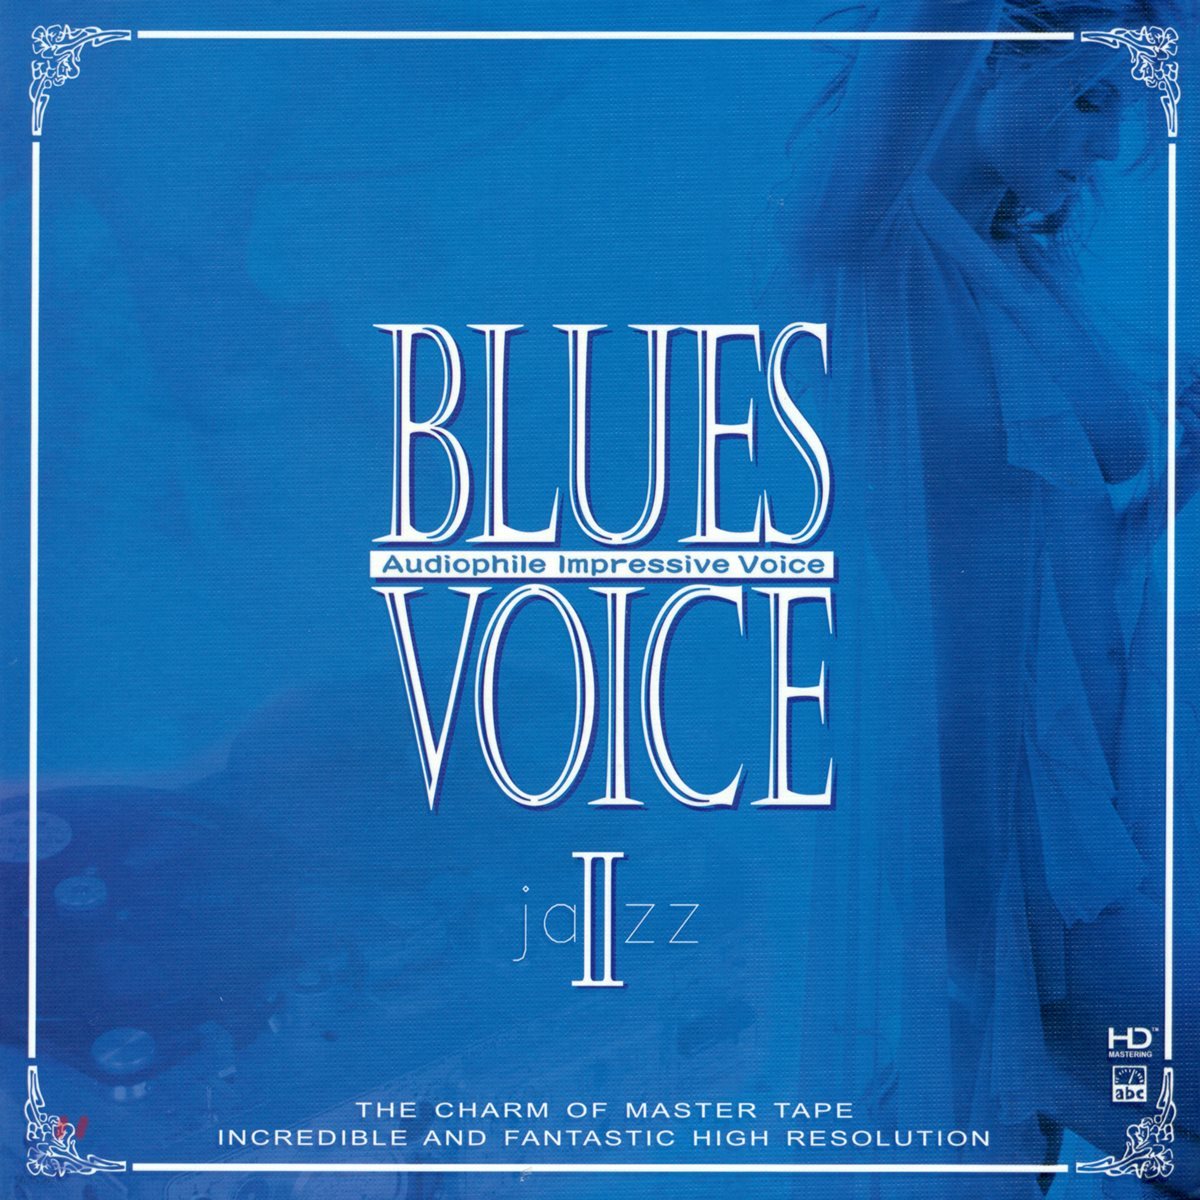 재즈 & 블루스 보컬 모음집 (Blues Voice 2 : Audiophile Impressive Voice)